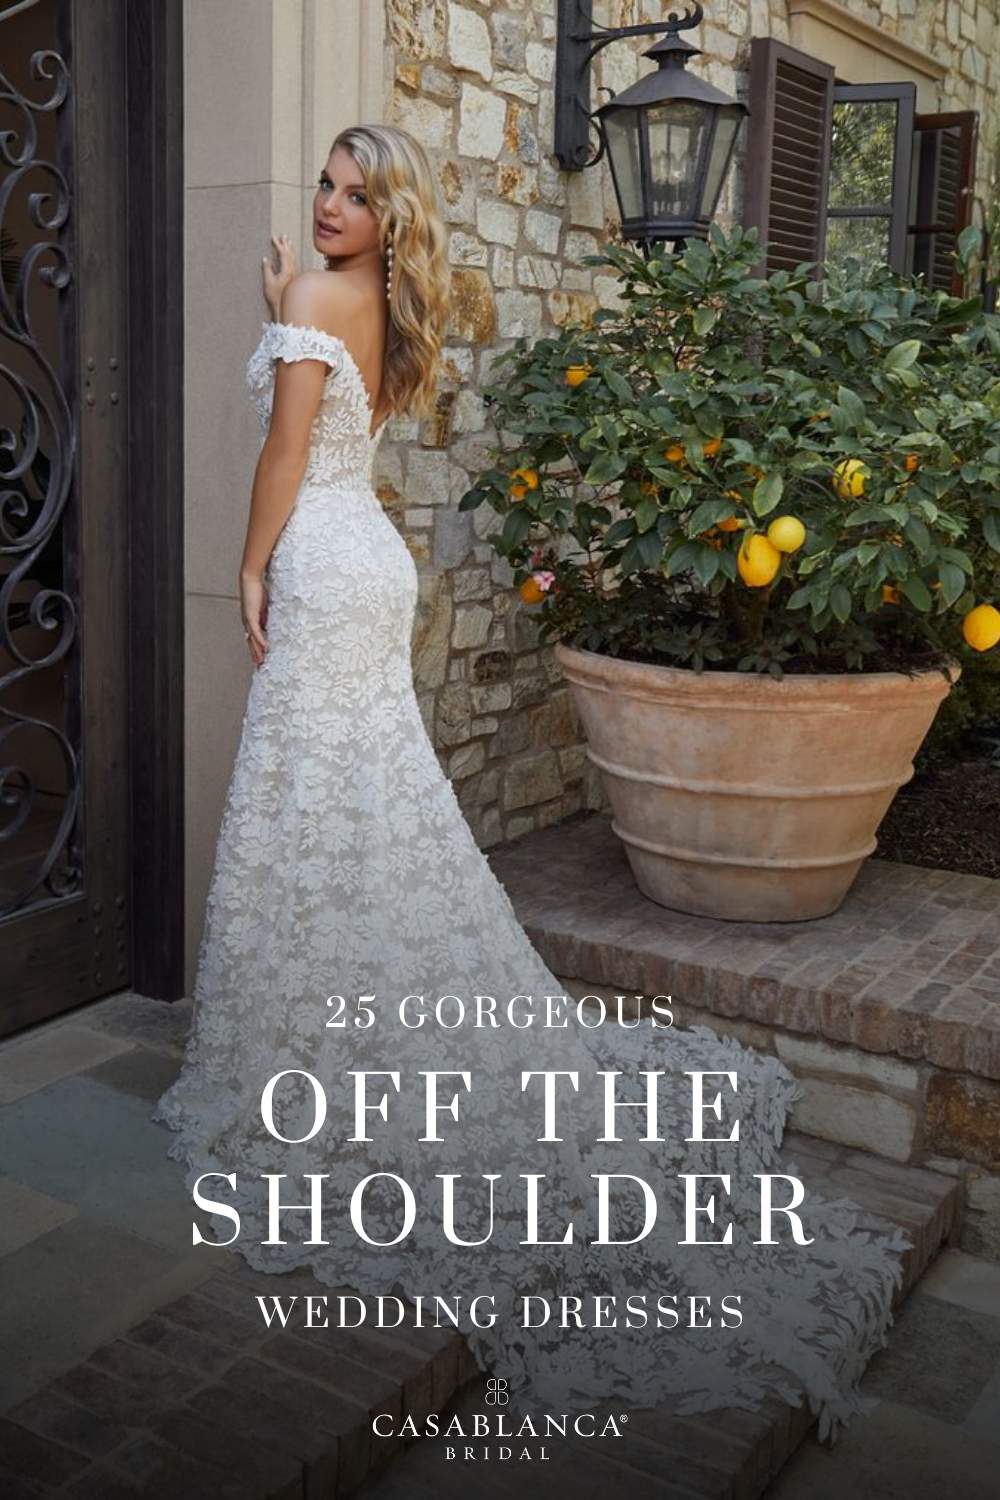 Simple V-Neckline Wedding Dress with Off-the-Shoulder Straps